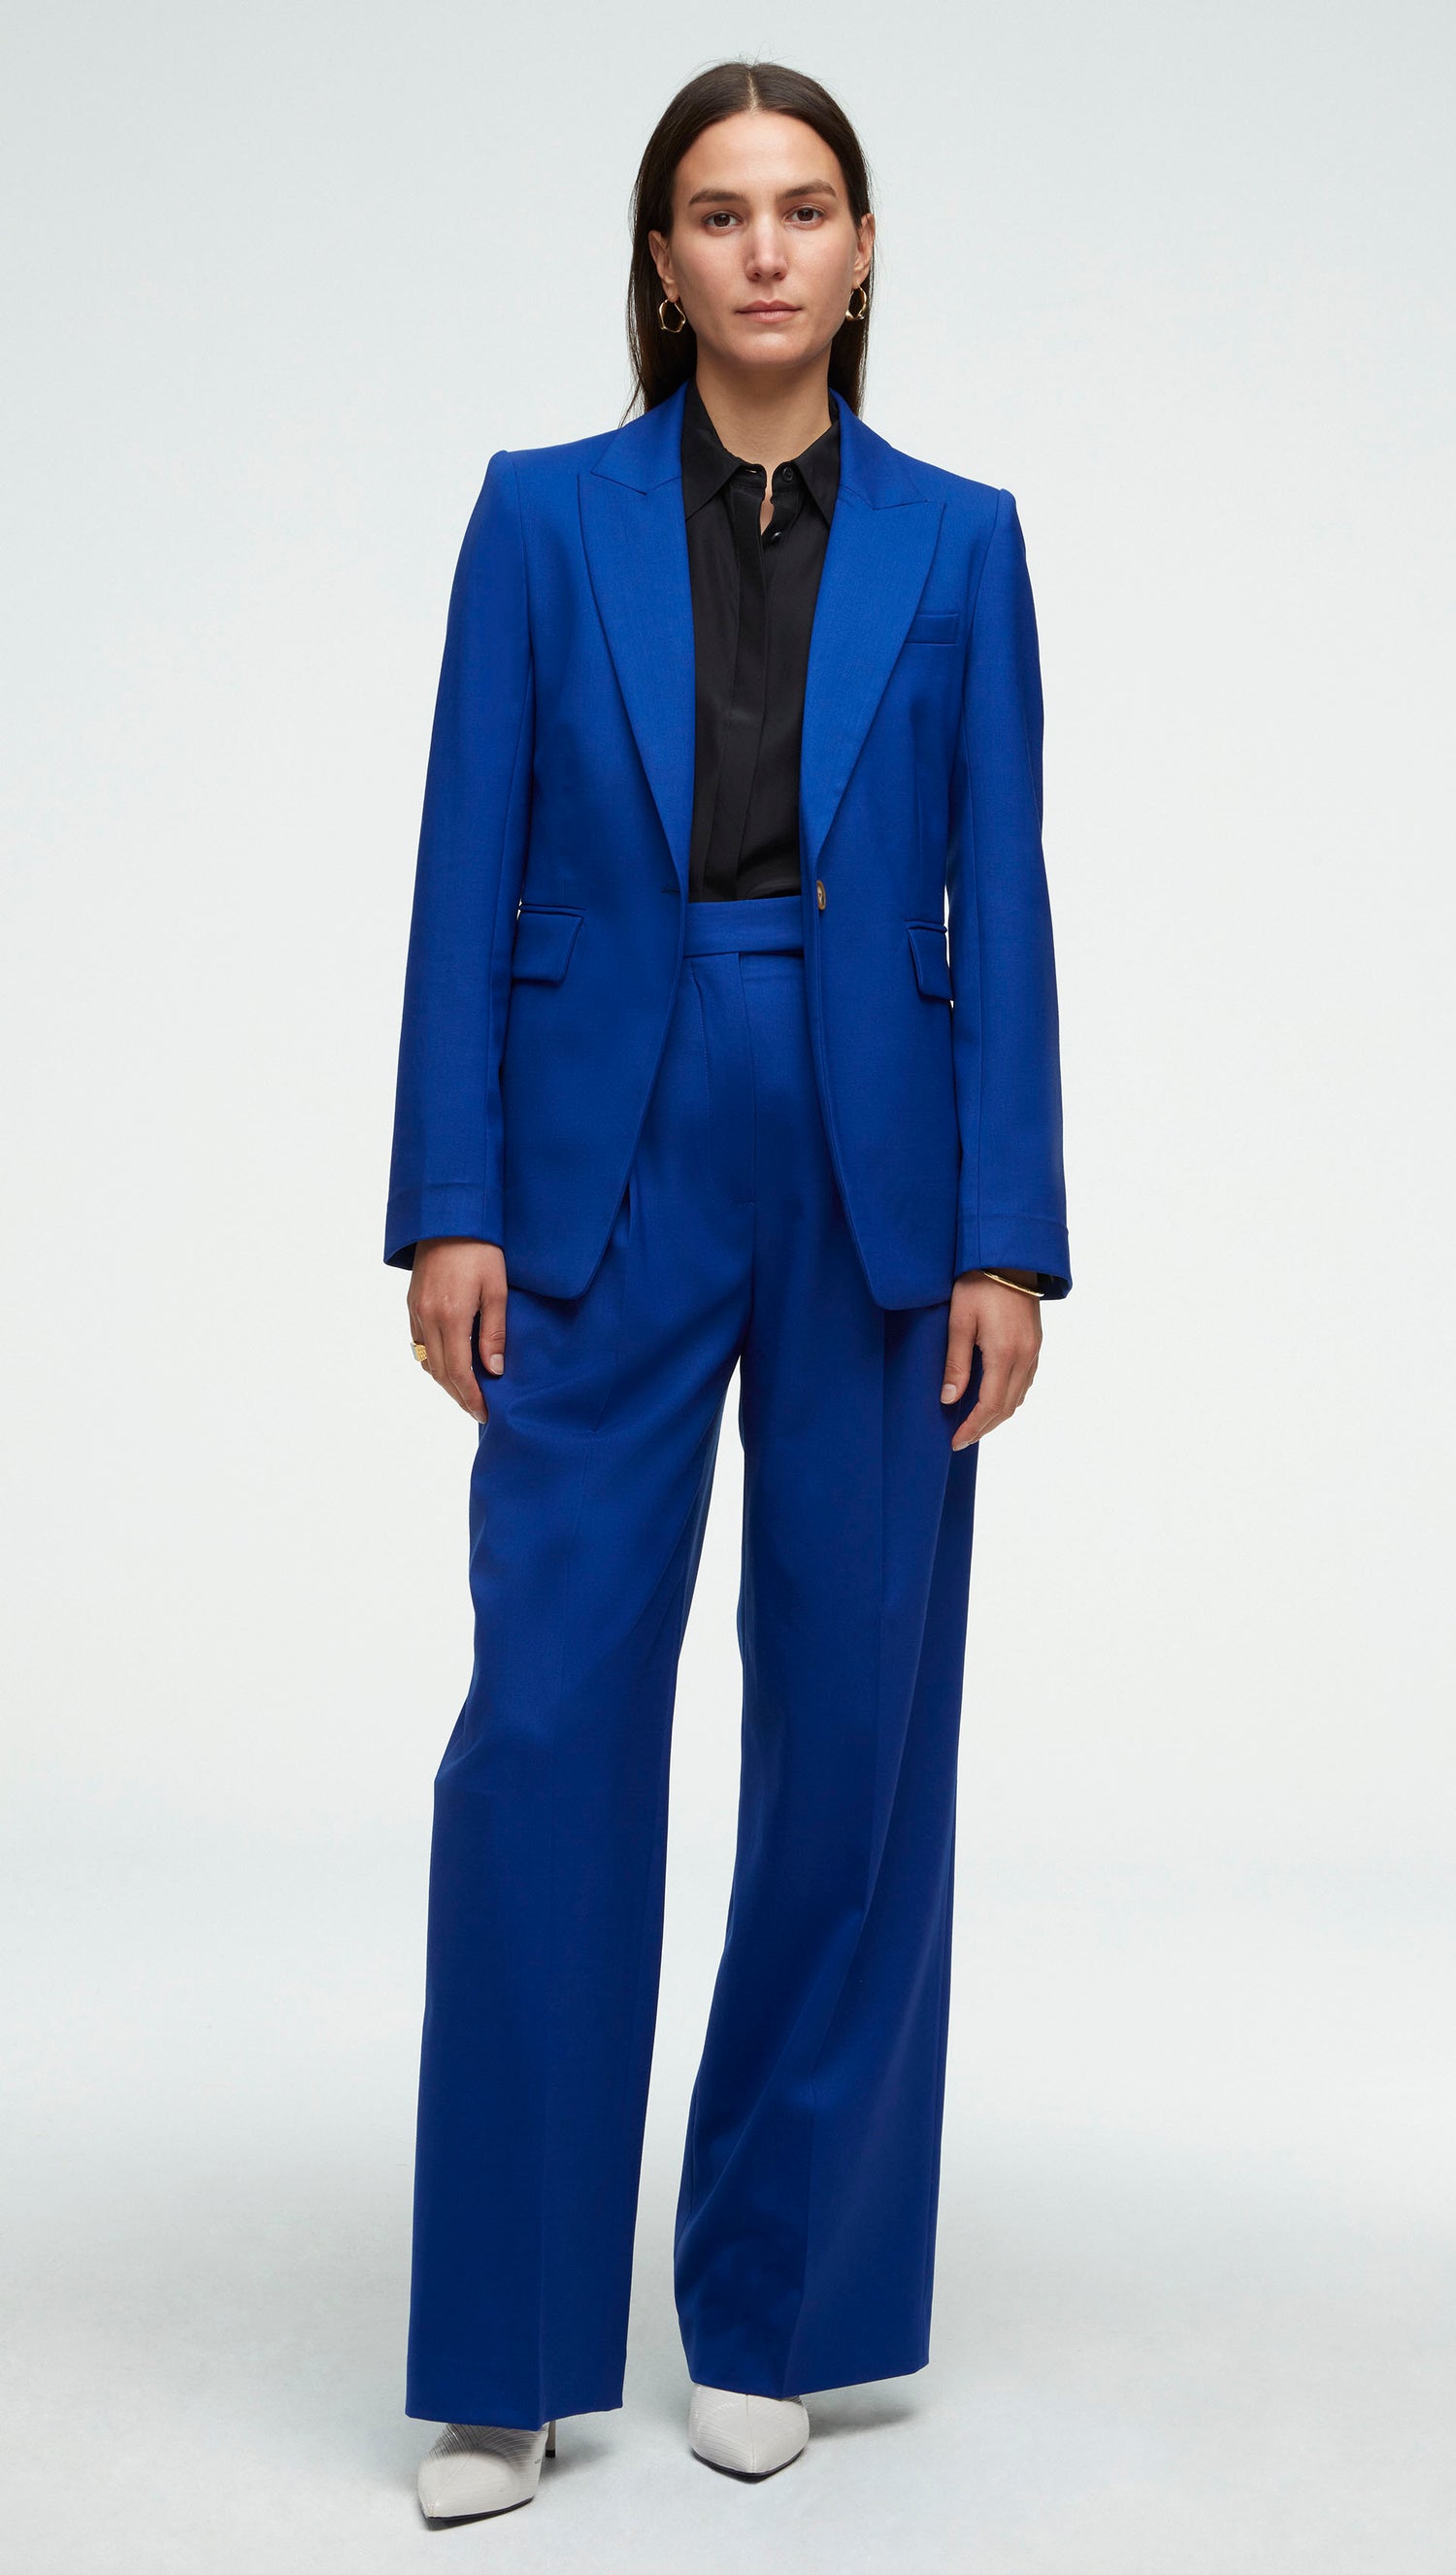 Mwxsd brand Men's Casual Slim Fit Blazer suit jacket Men Single Button  Blazer Male fashion Suit Blue Jacket and Coat for Male - OnshopDeals.Com